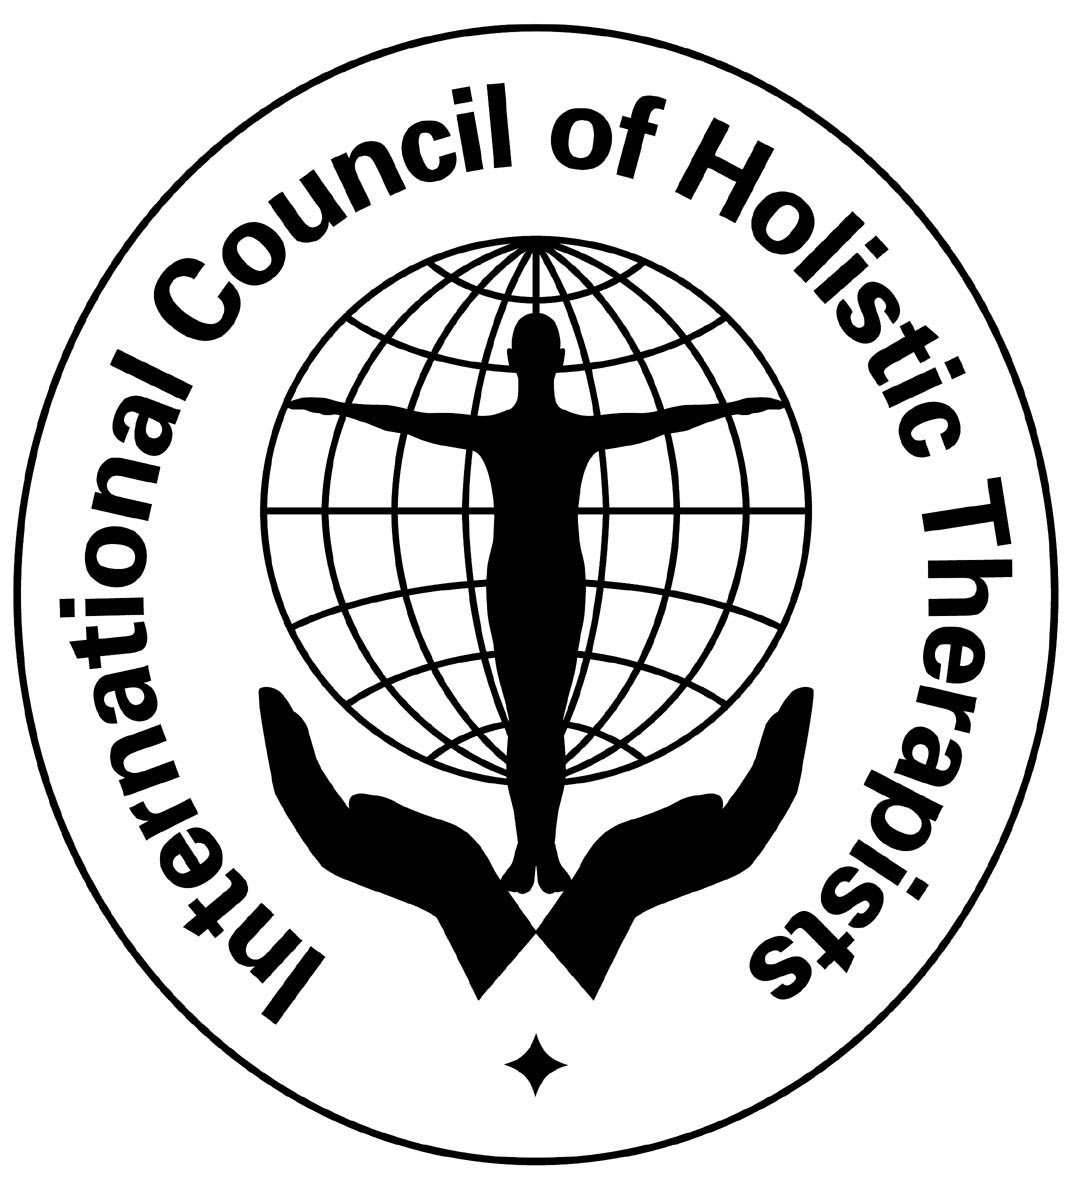 FHT Logo